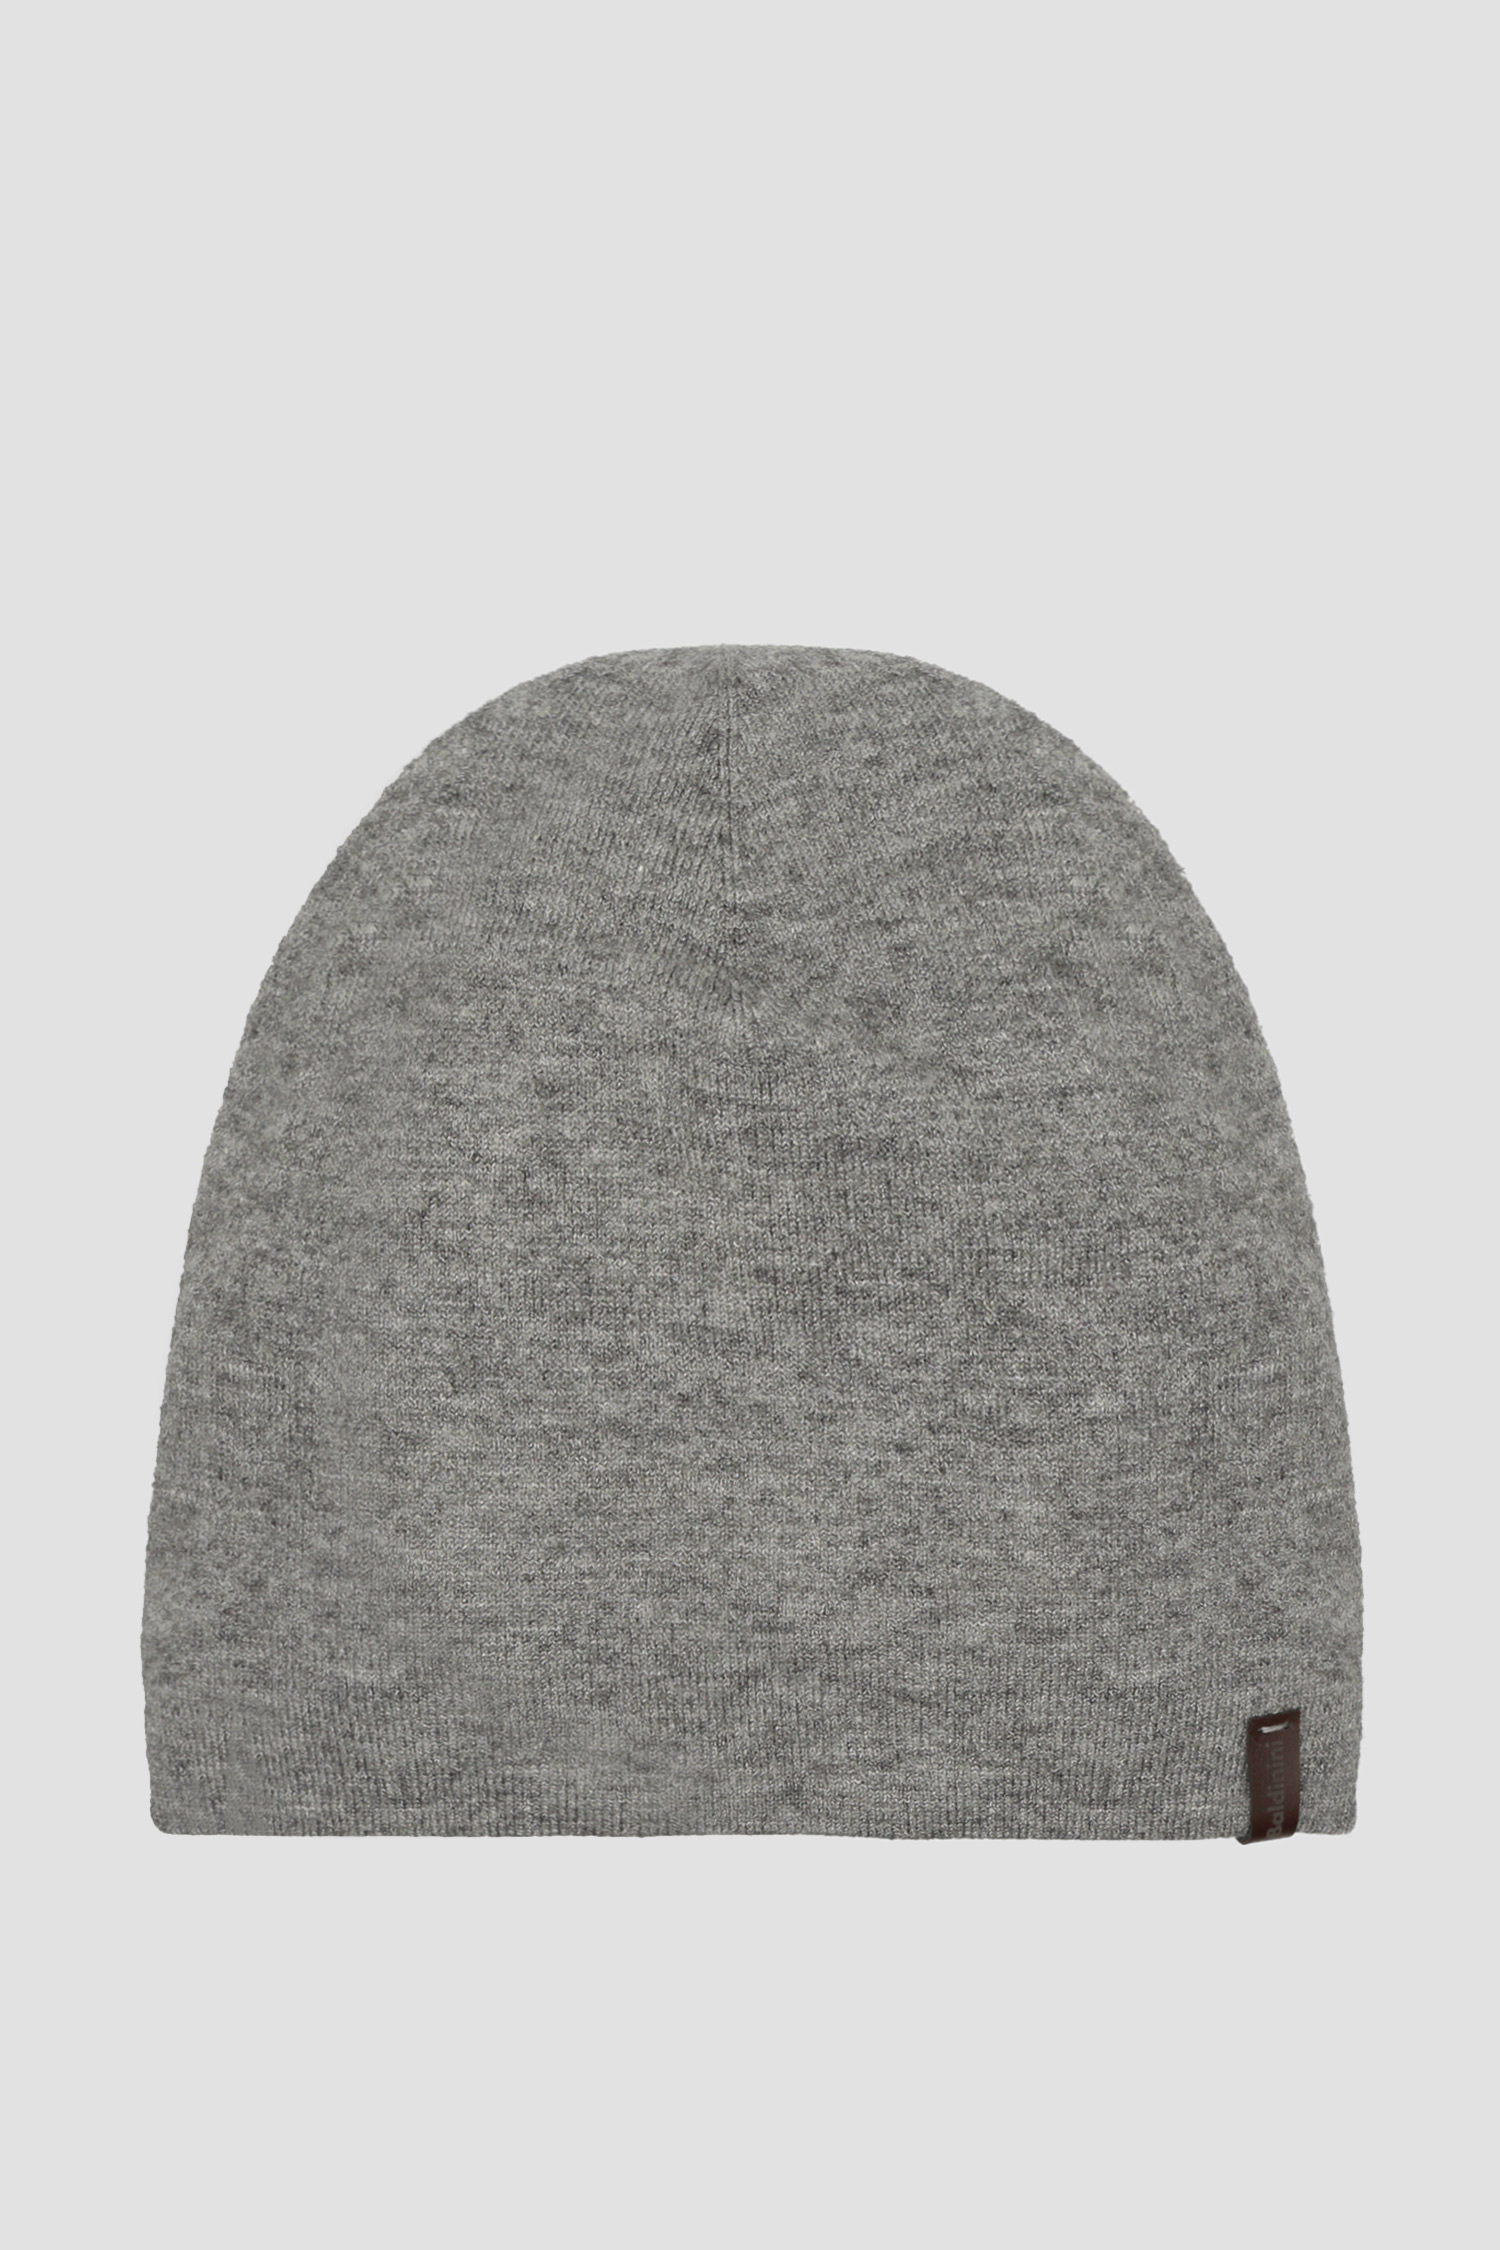 Сіра шапка для хлопців Baldinini M2B004SPER;GRPN